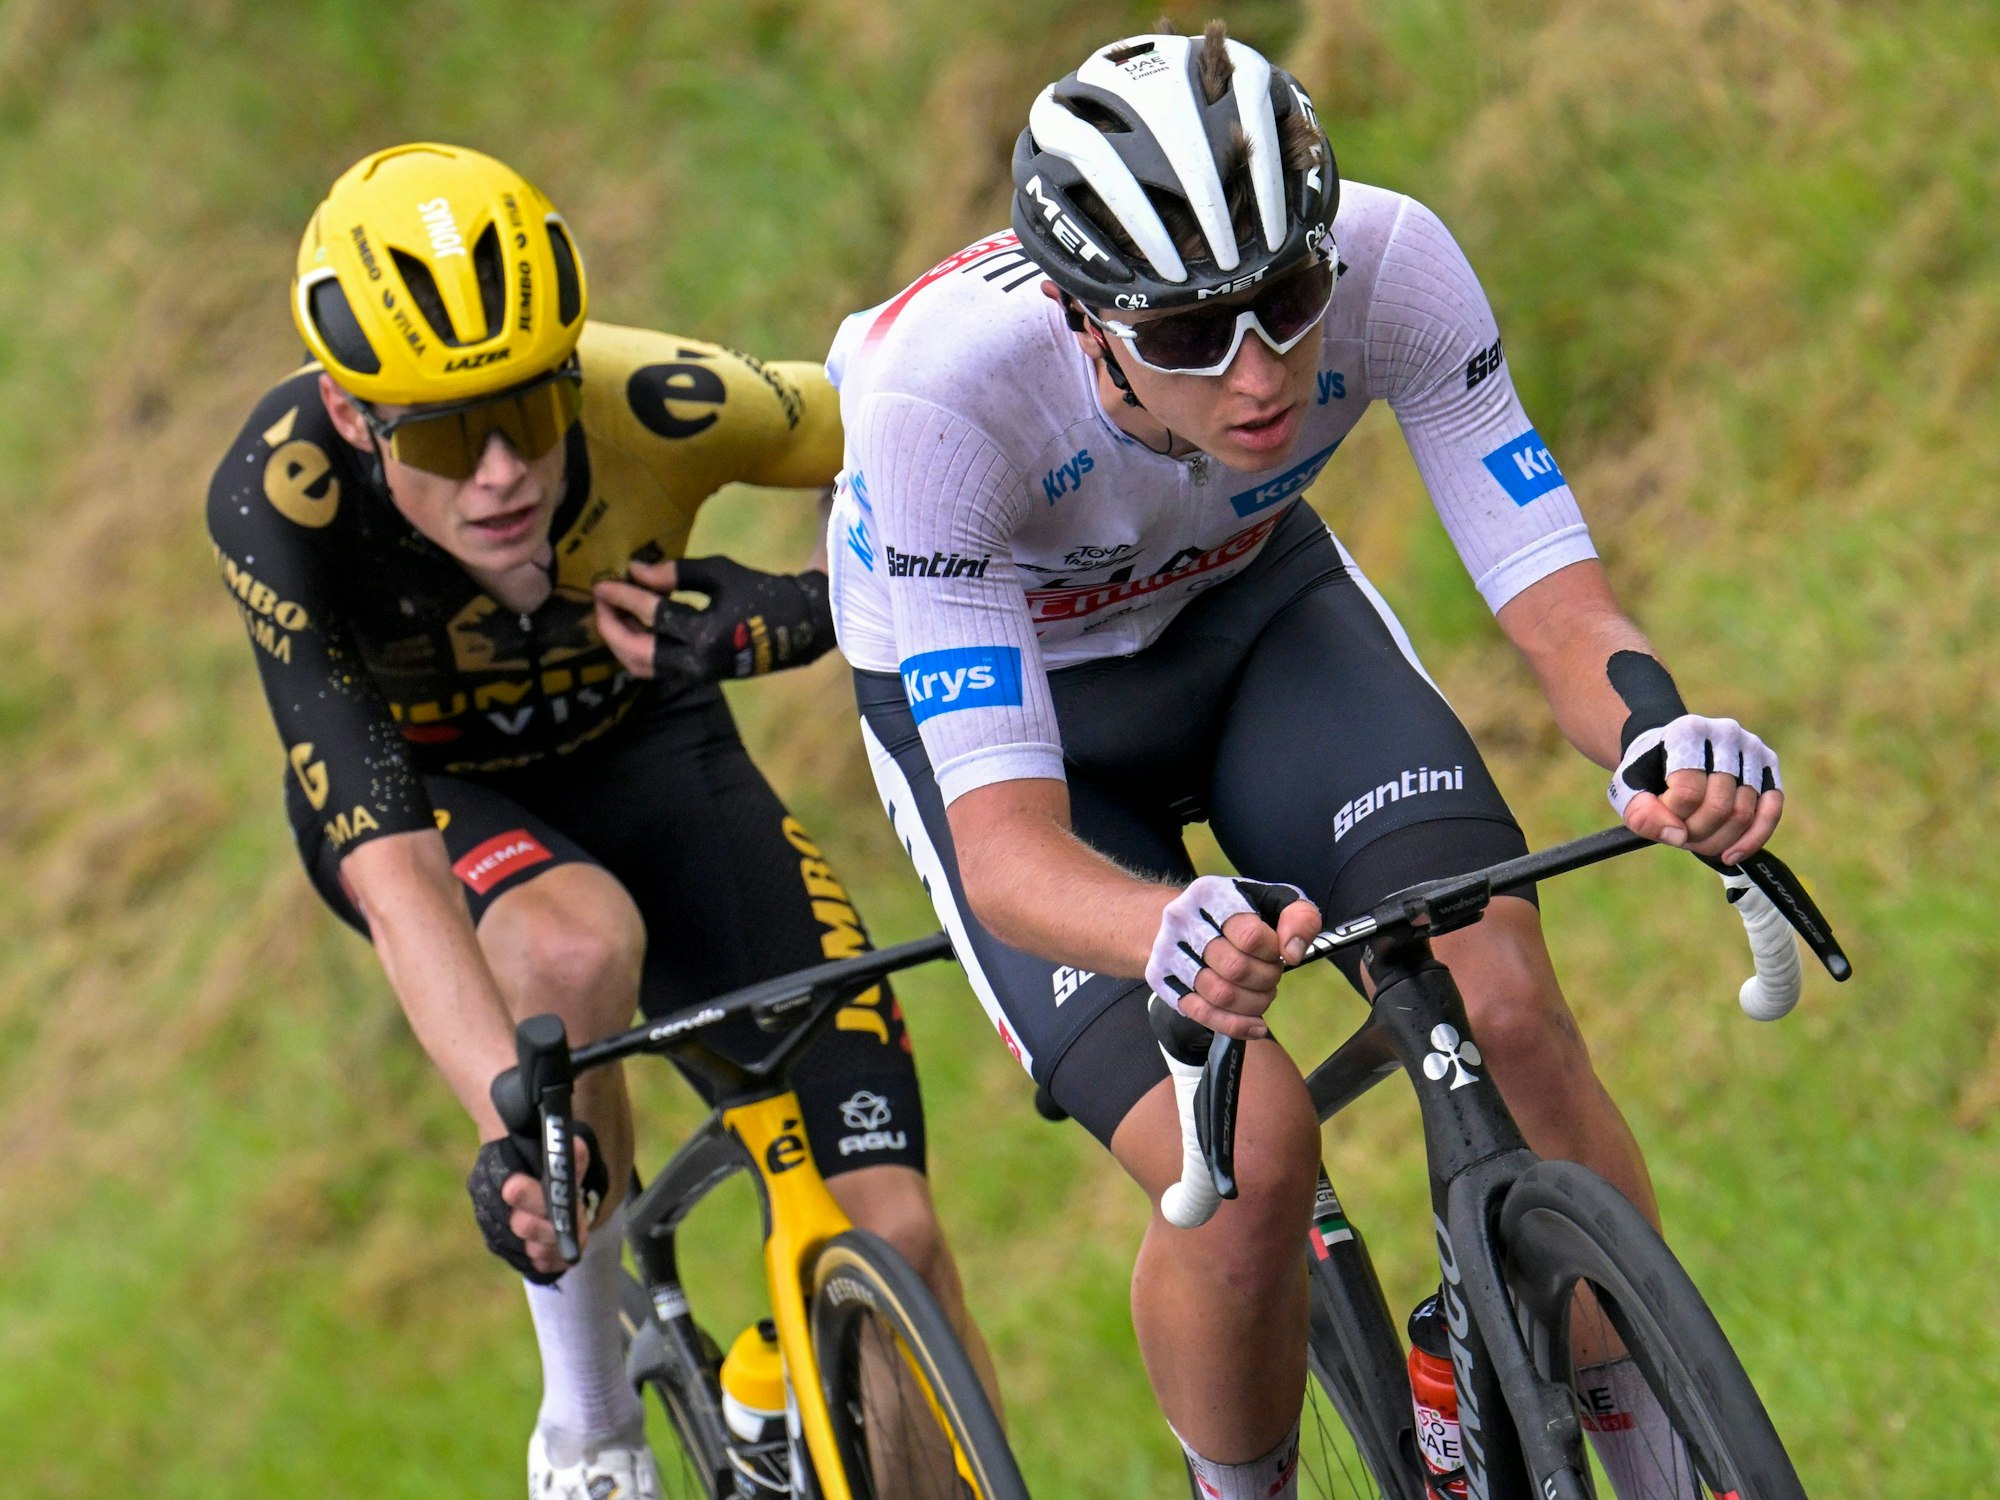 Top-Favoriten in Aktion bei der Tour de France: Jonas Vingegaard und Tadej Pogacar.